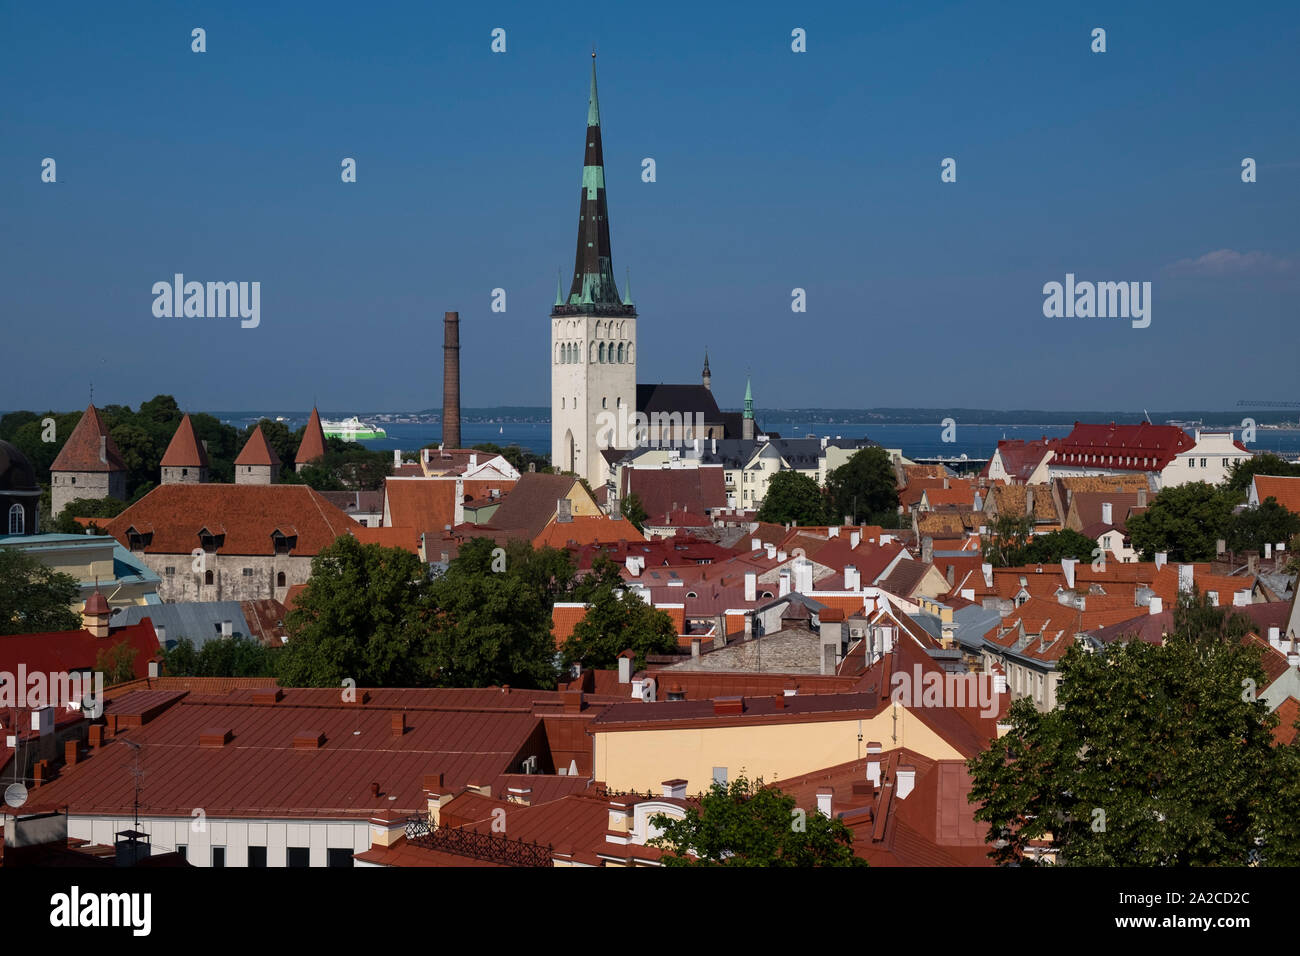 Vue panoramique de l'église St Olav et toits environnants de la vieille ville de Tallinn, Estonie Banque D'Images